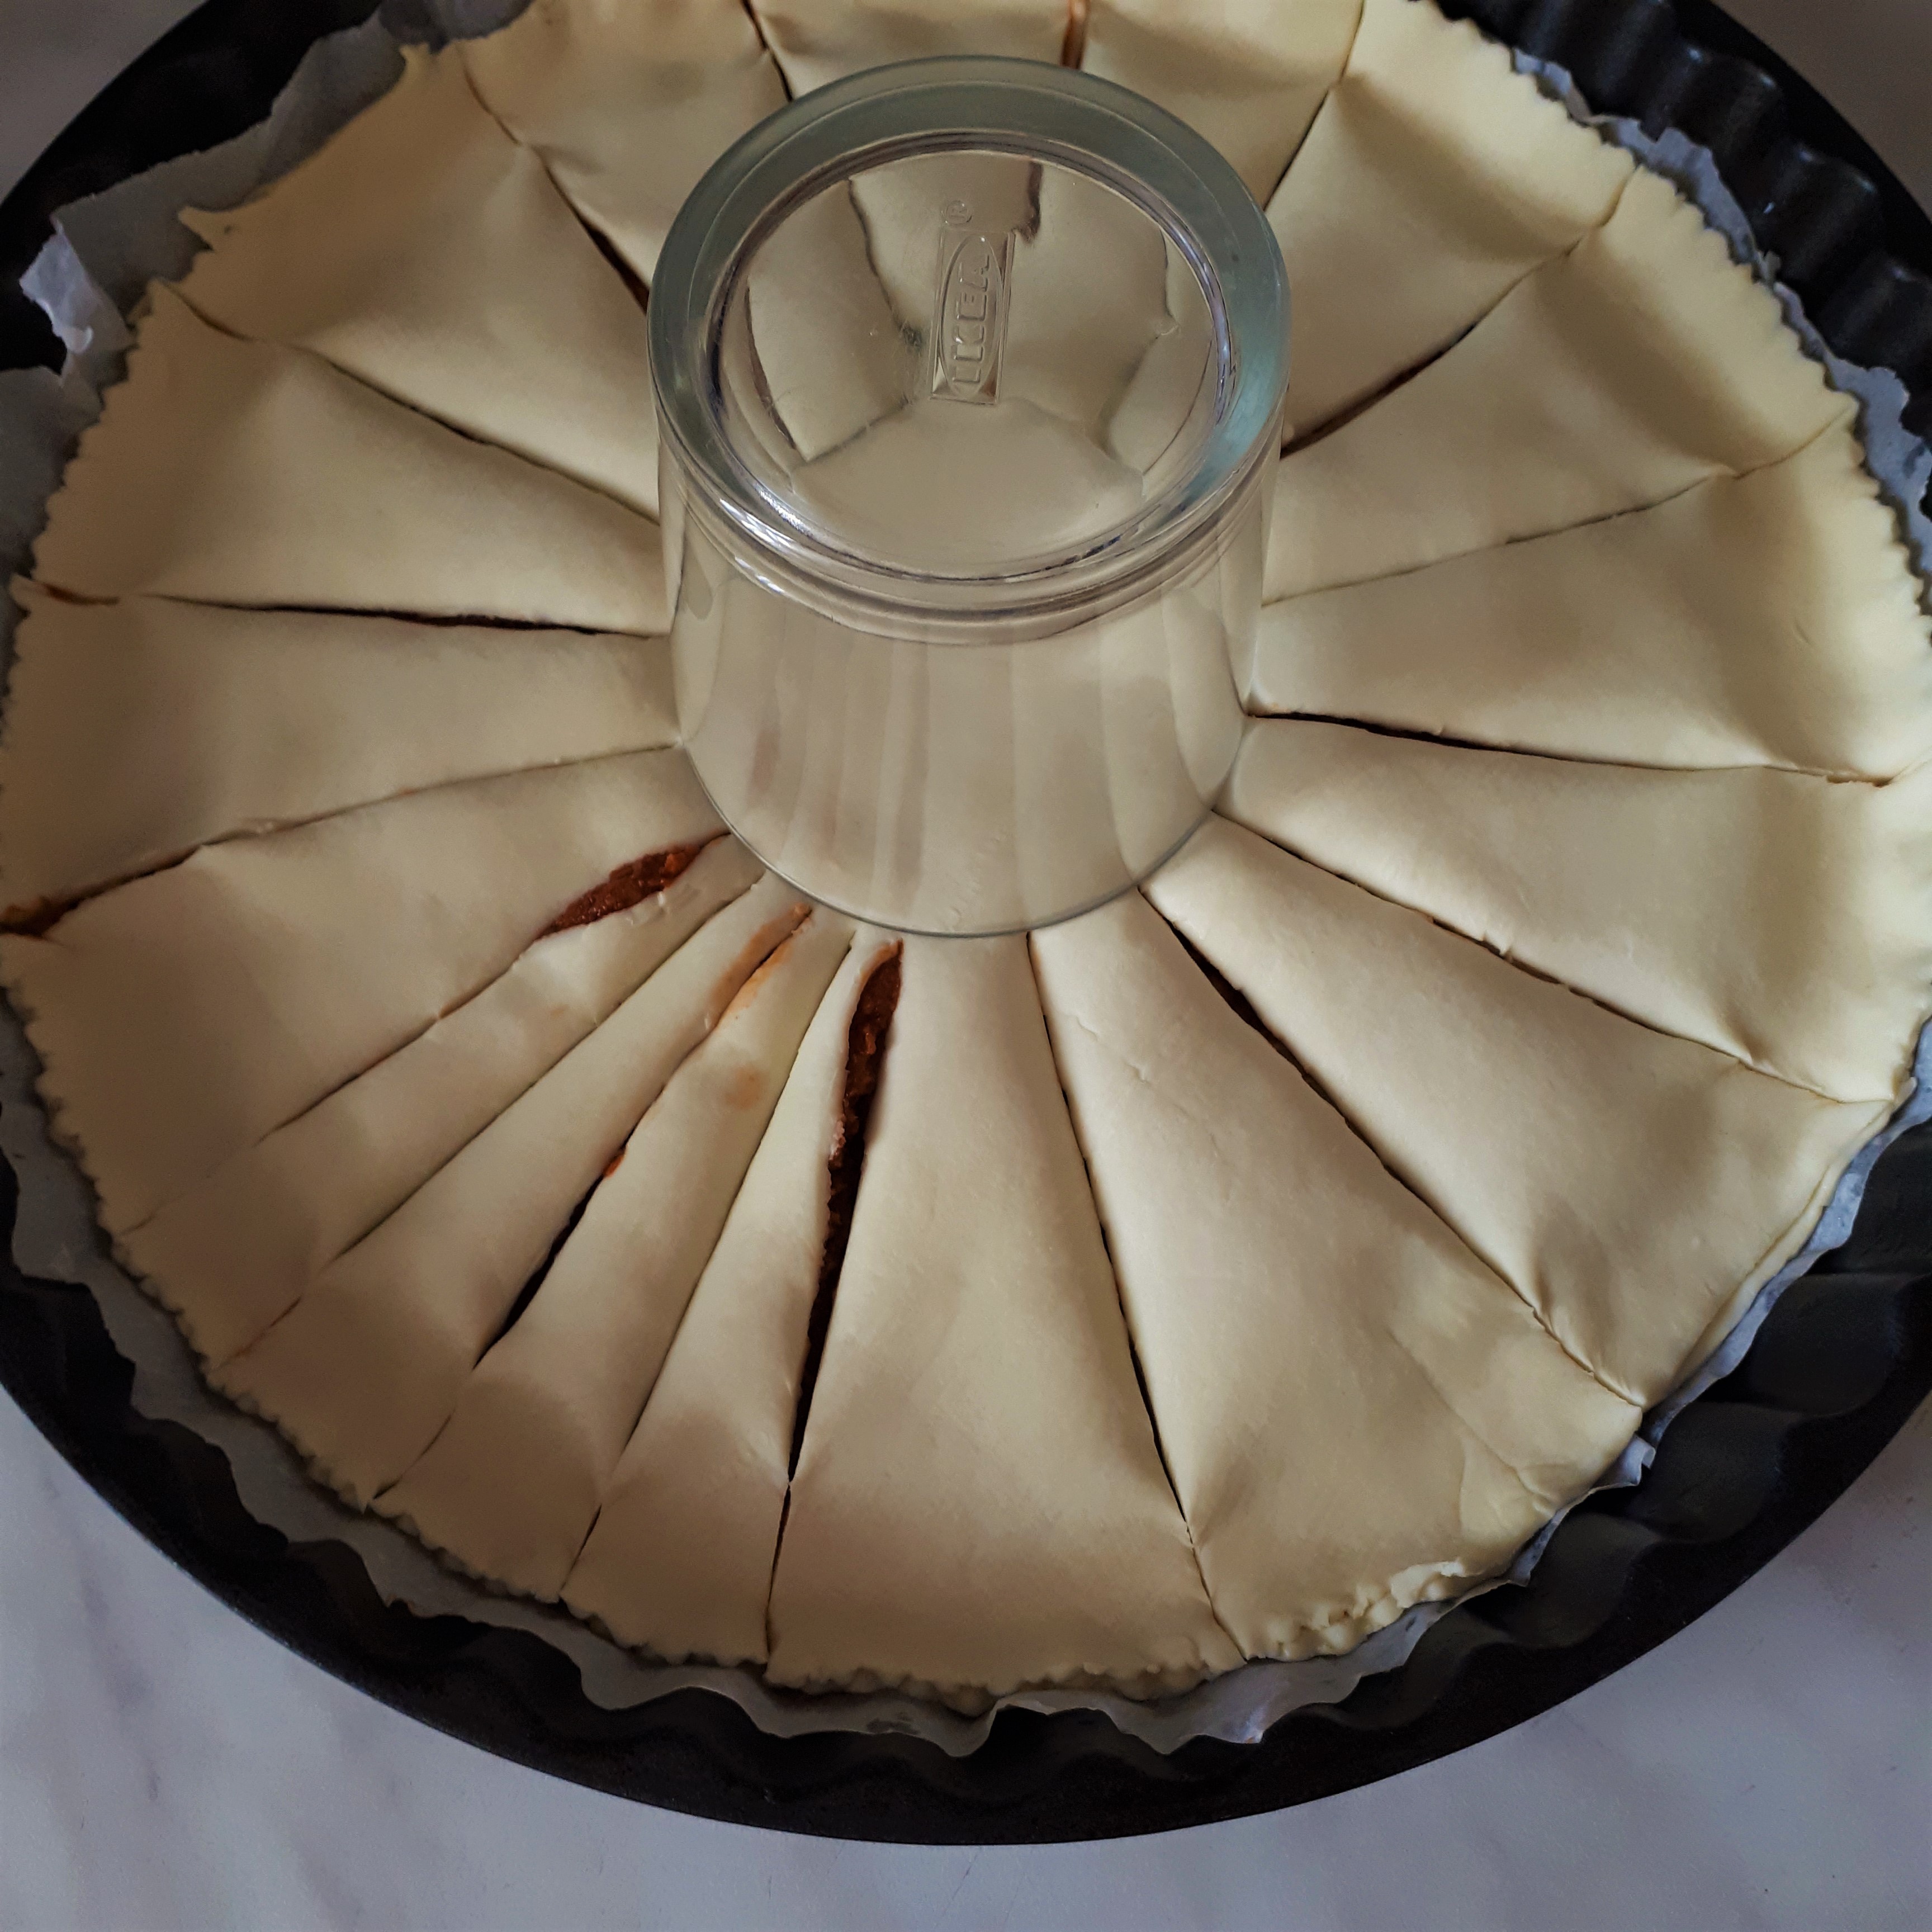 Kruhová forma na koláč vystlaná papierom na pečenie lístkové cesto plnené rajčinovo-olivovou náplňou v strede sklený pohár hore dnom nakrájané pásy cesta okolo pohára na mramorovom povrchu